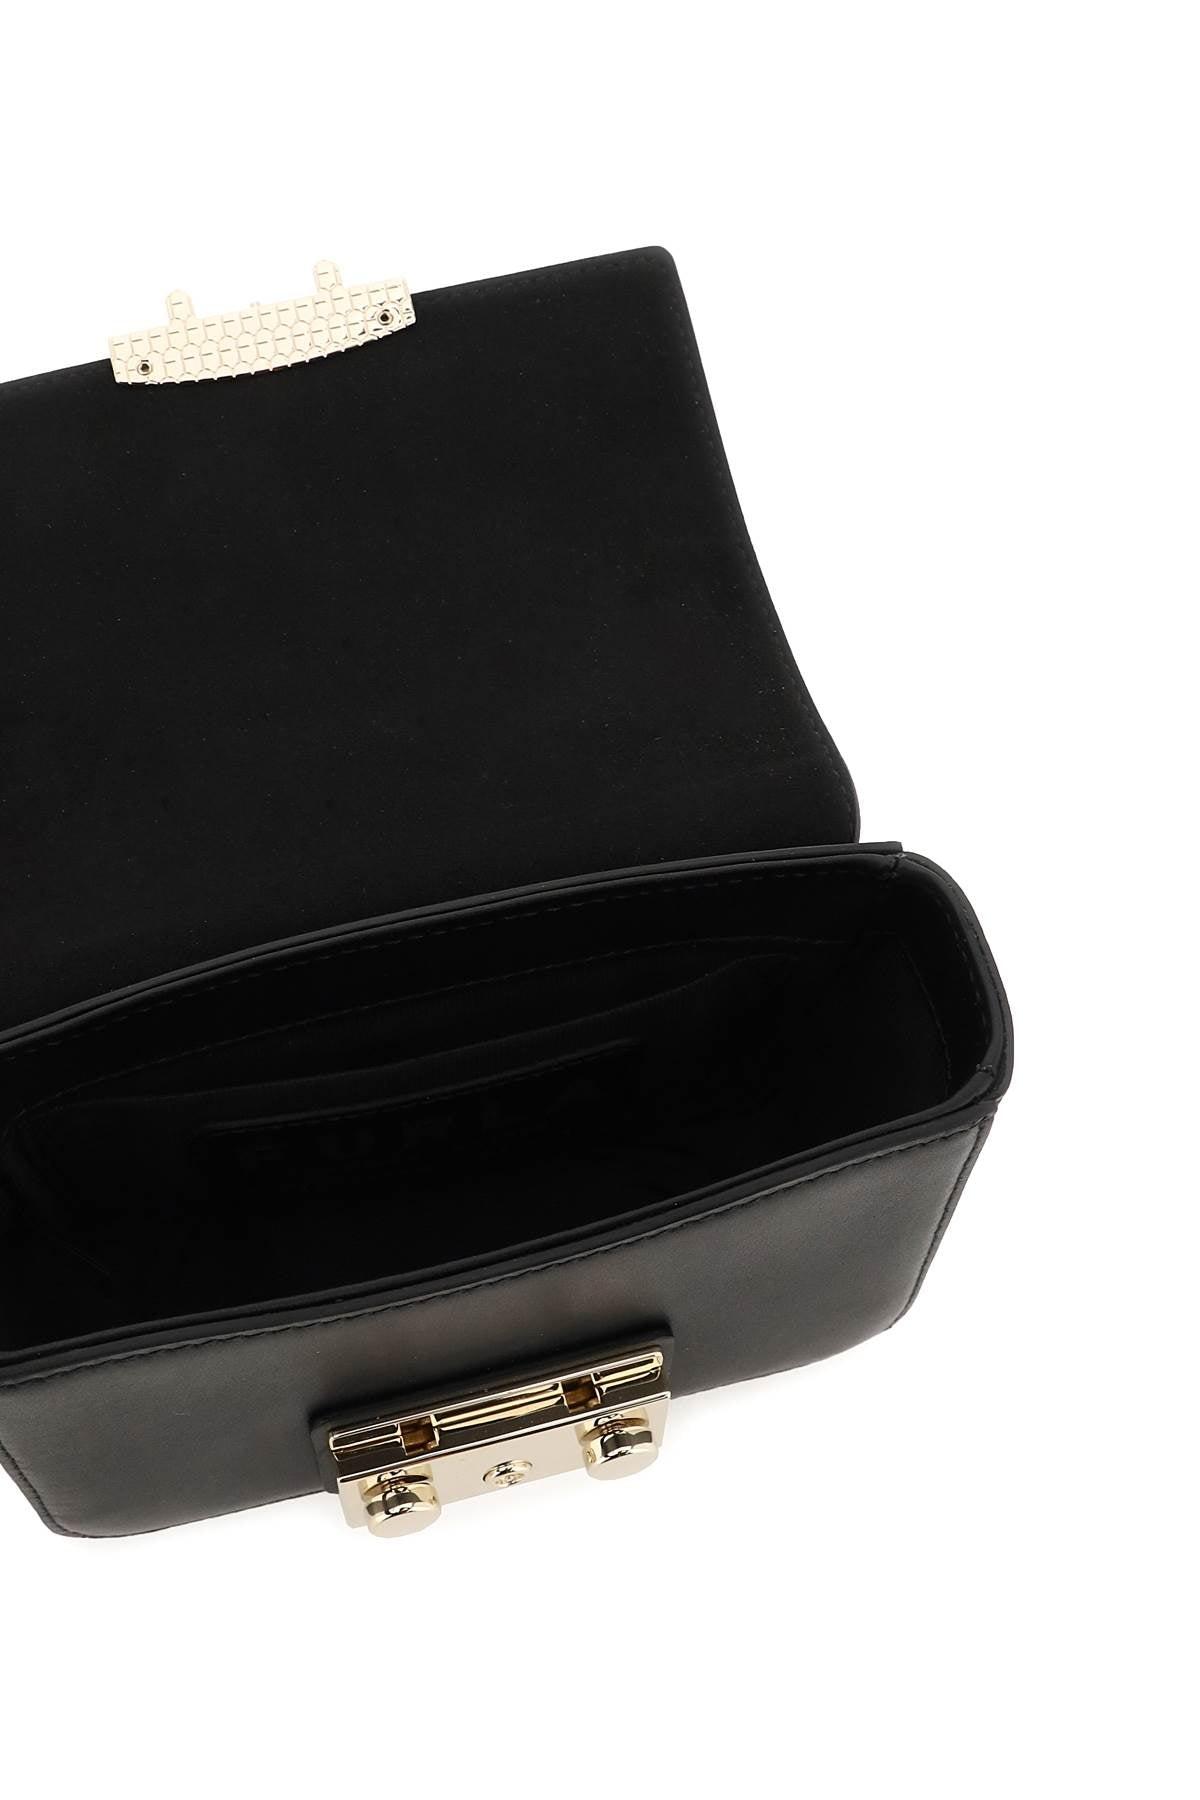 Furla Metropolis Mini Shoulder Bag in Black | Lyst